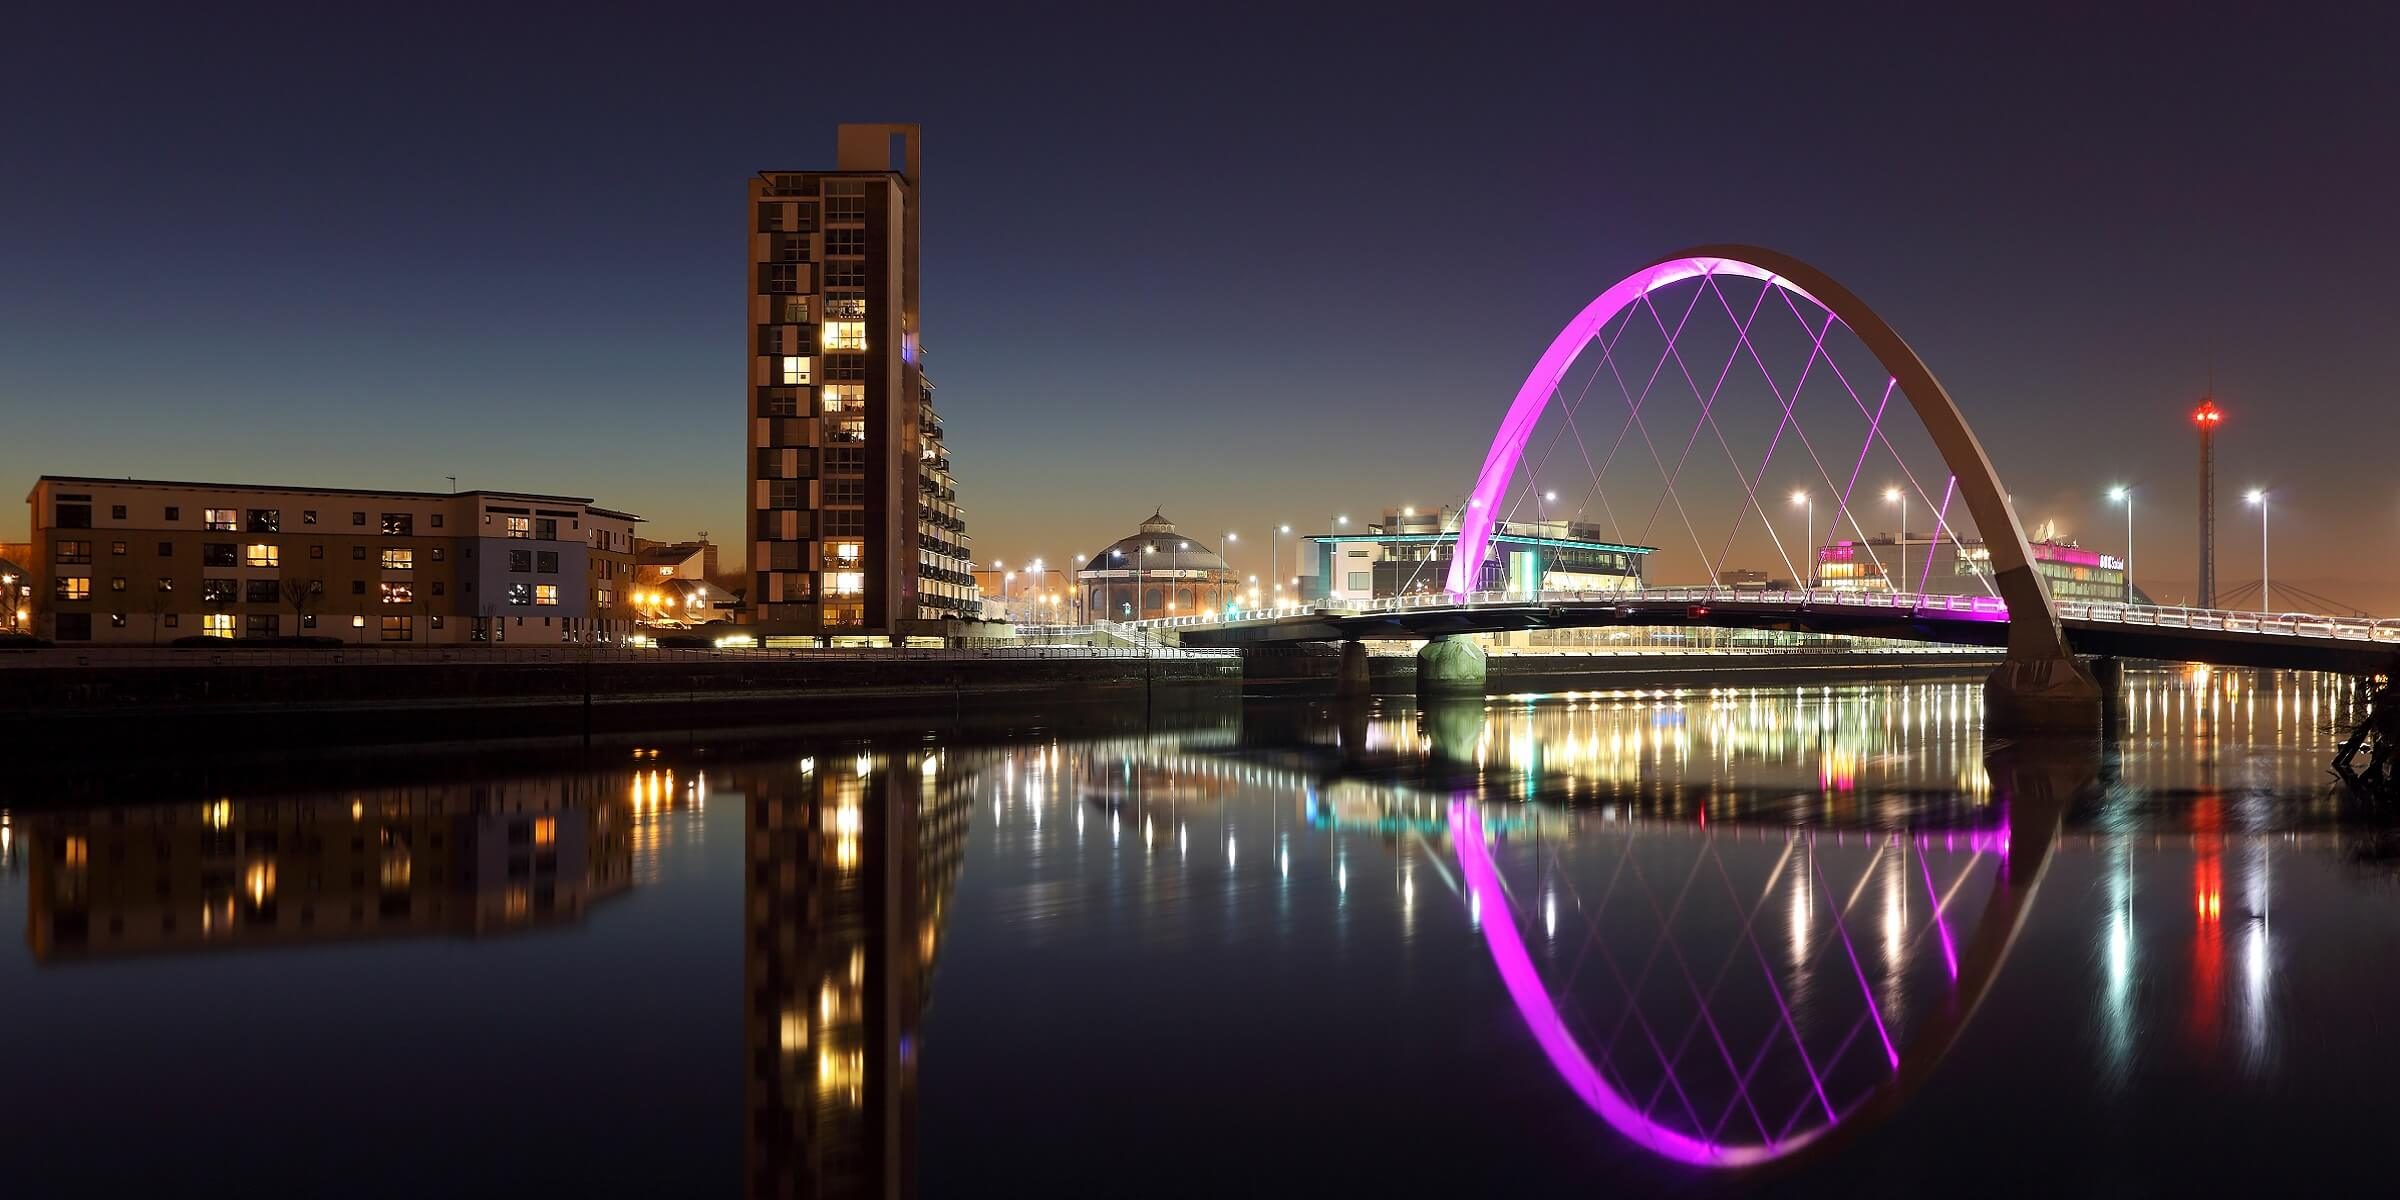 Erleben Sie den Clyde River in Glasgow bei abendlicher Stimmung und Beleuchtung